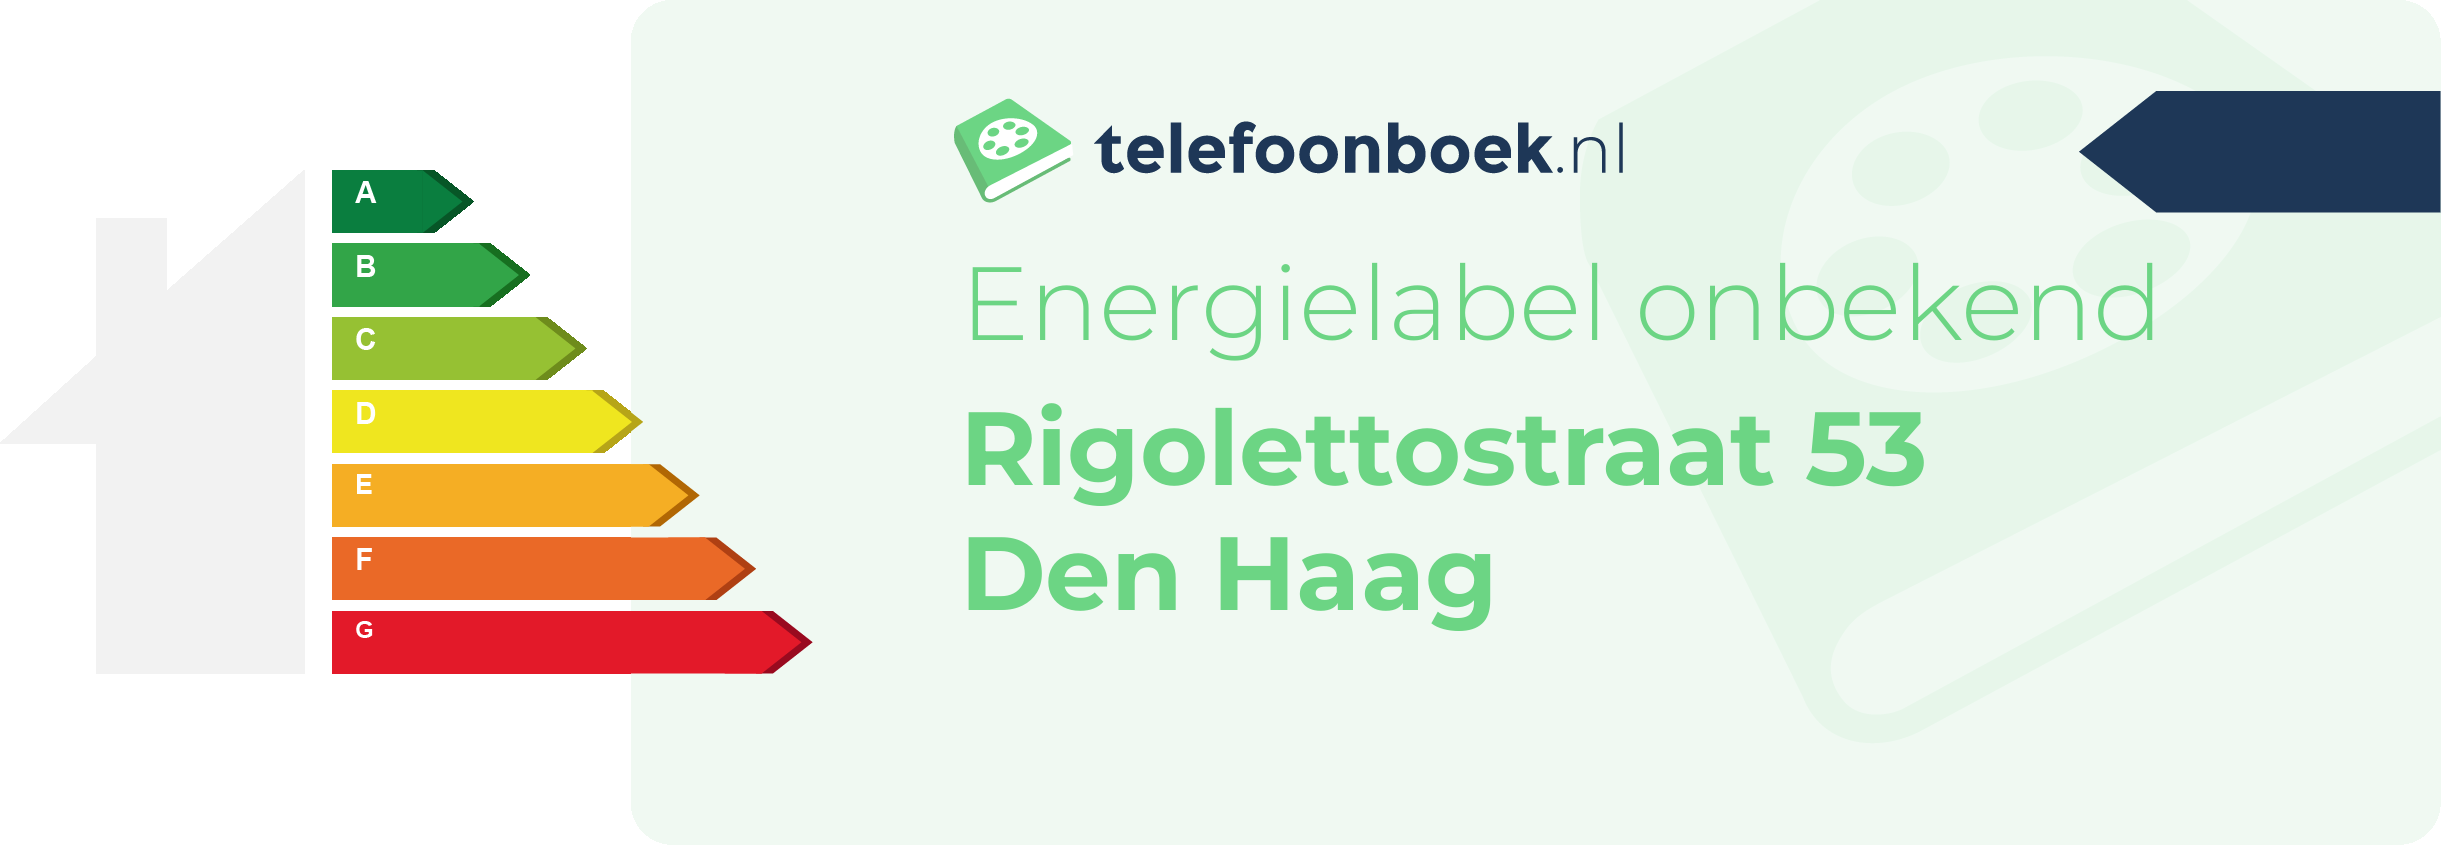 Energielabel Rigolettostraat 53 Den Haag